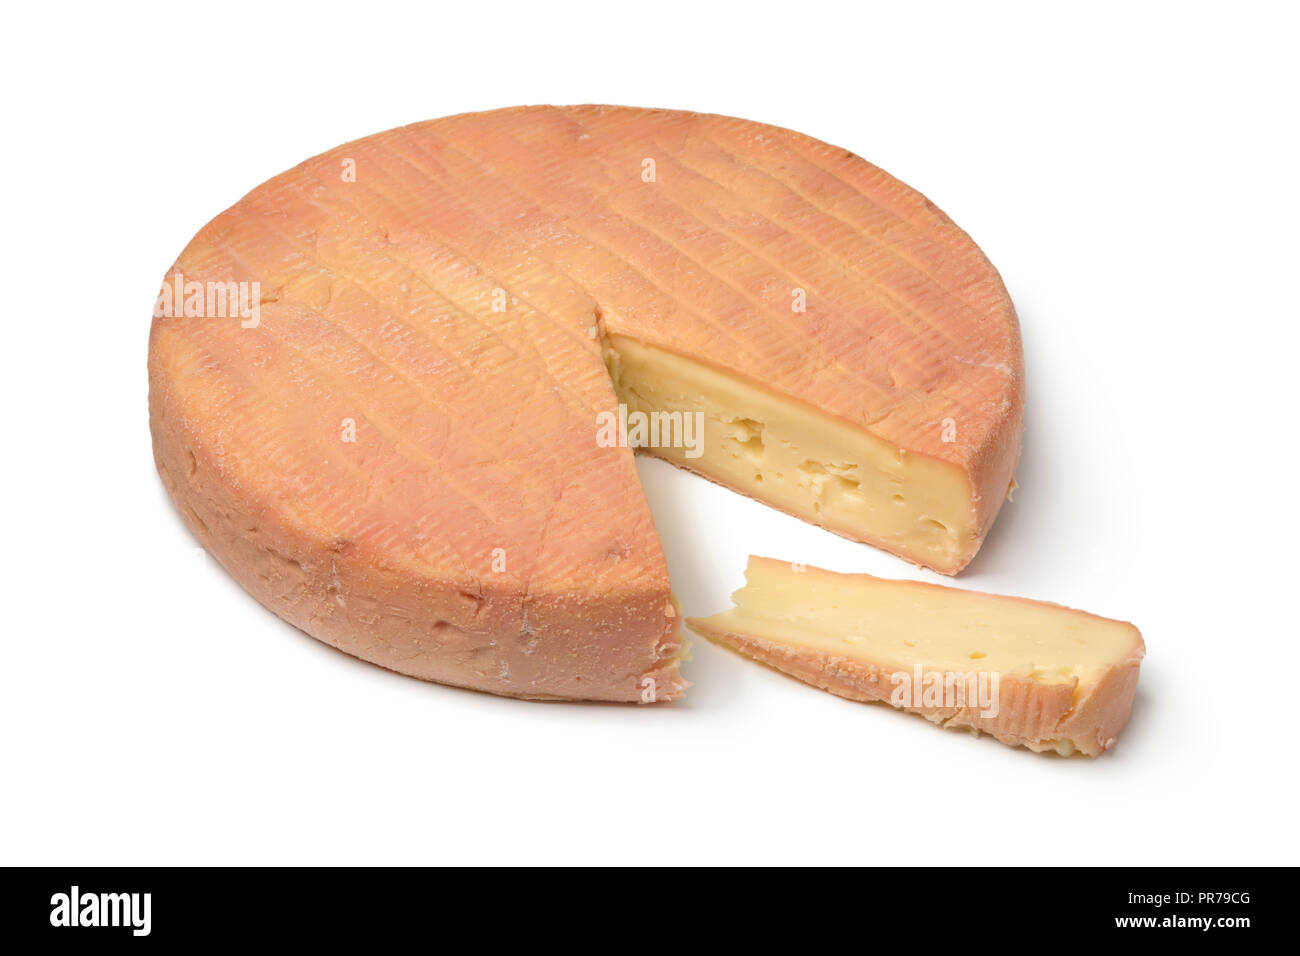 Trozo de queso Munster francés tradicional y un sector aislado sobre fondo blanco. Foto de stock